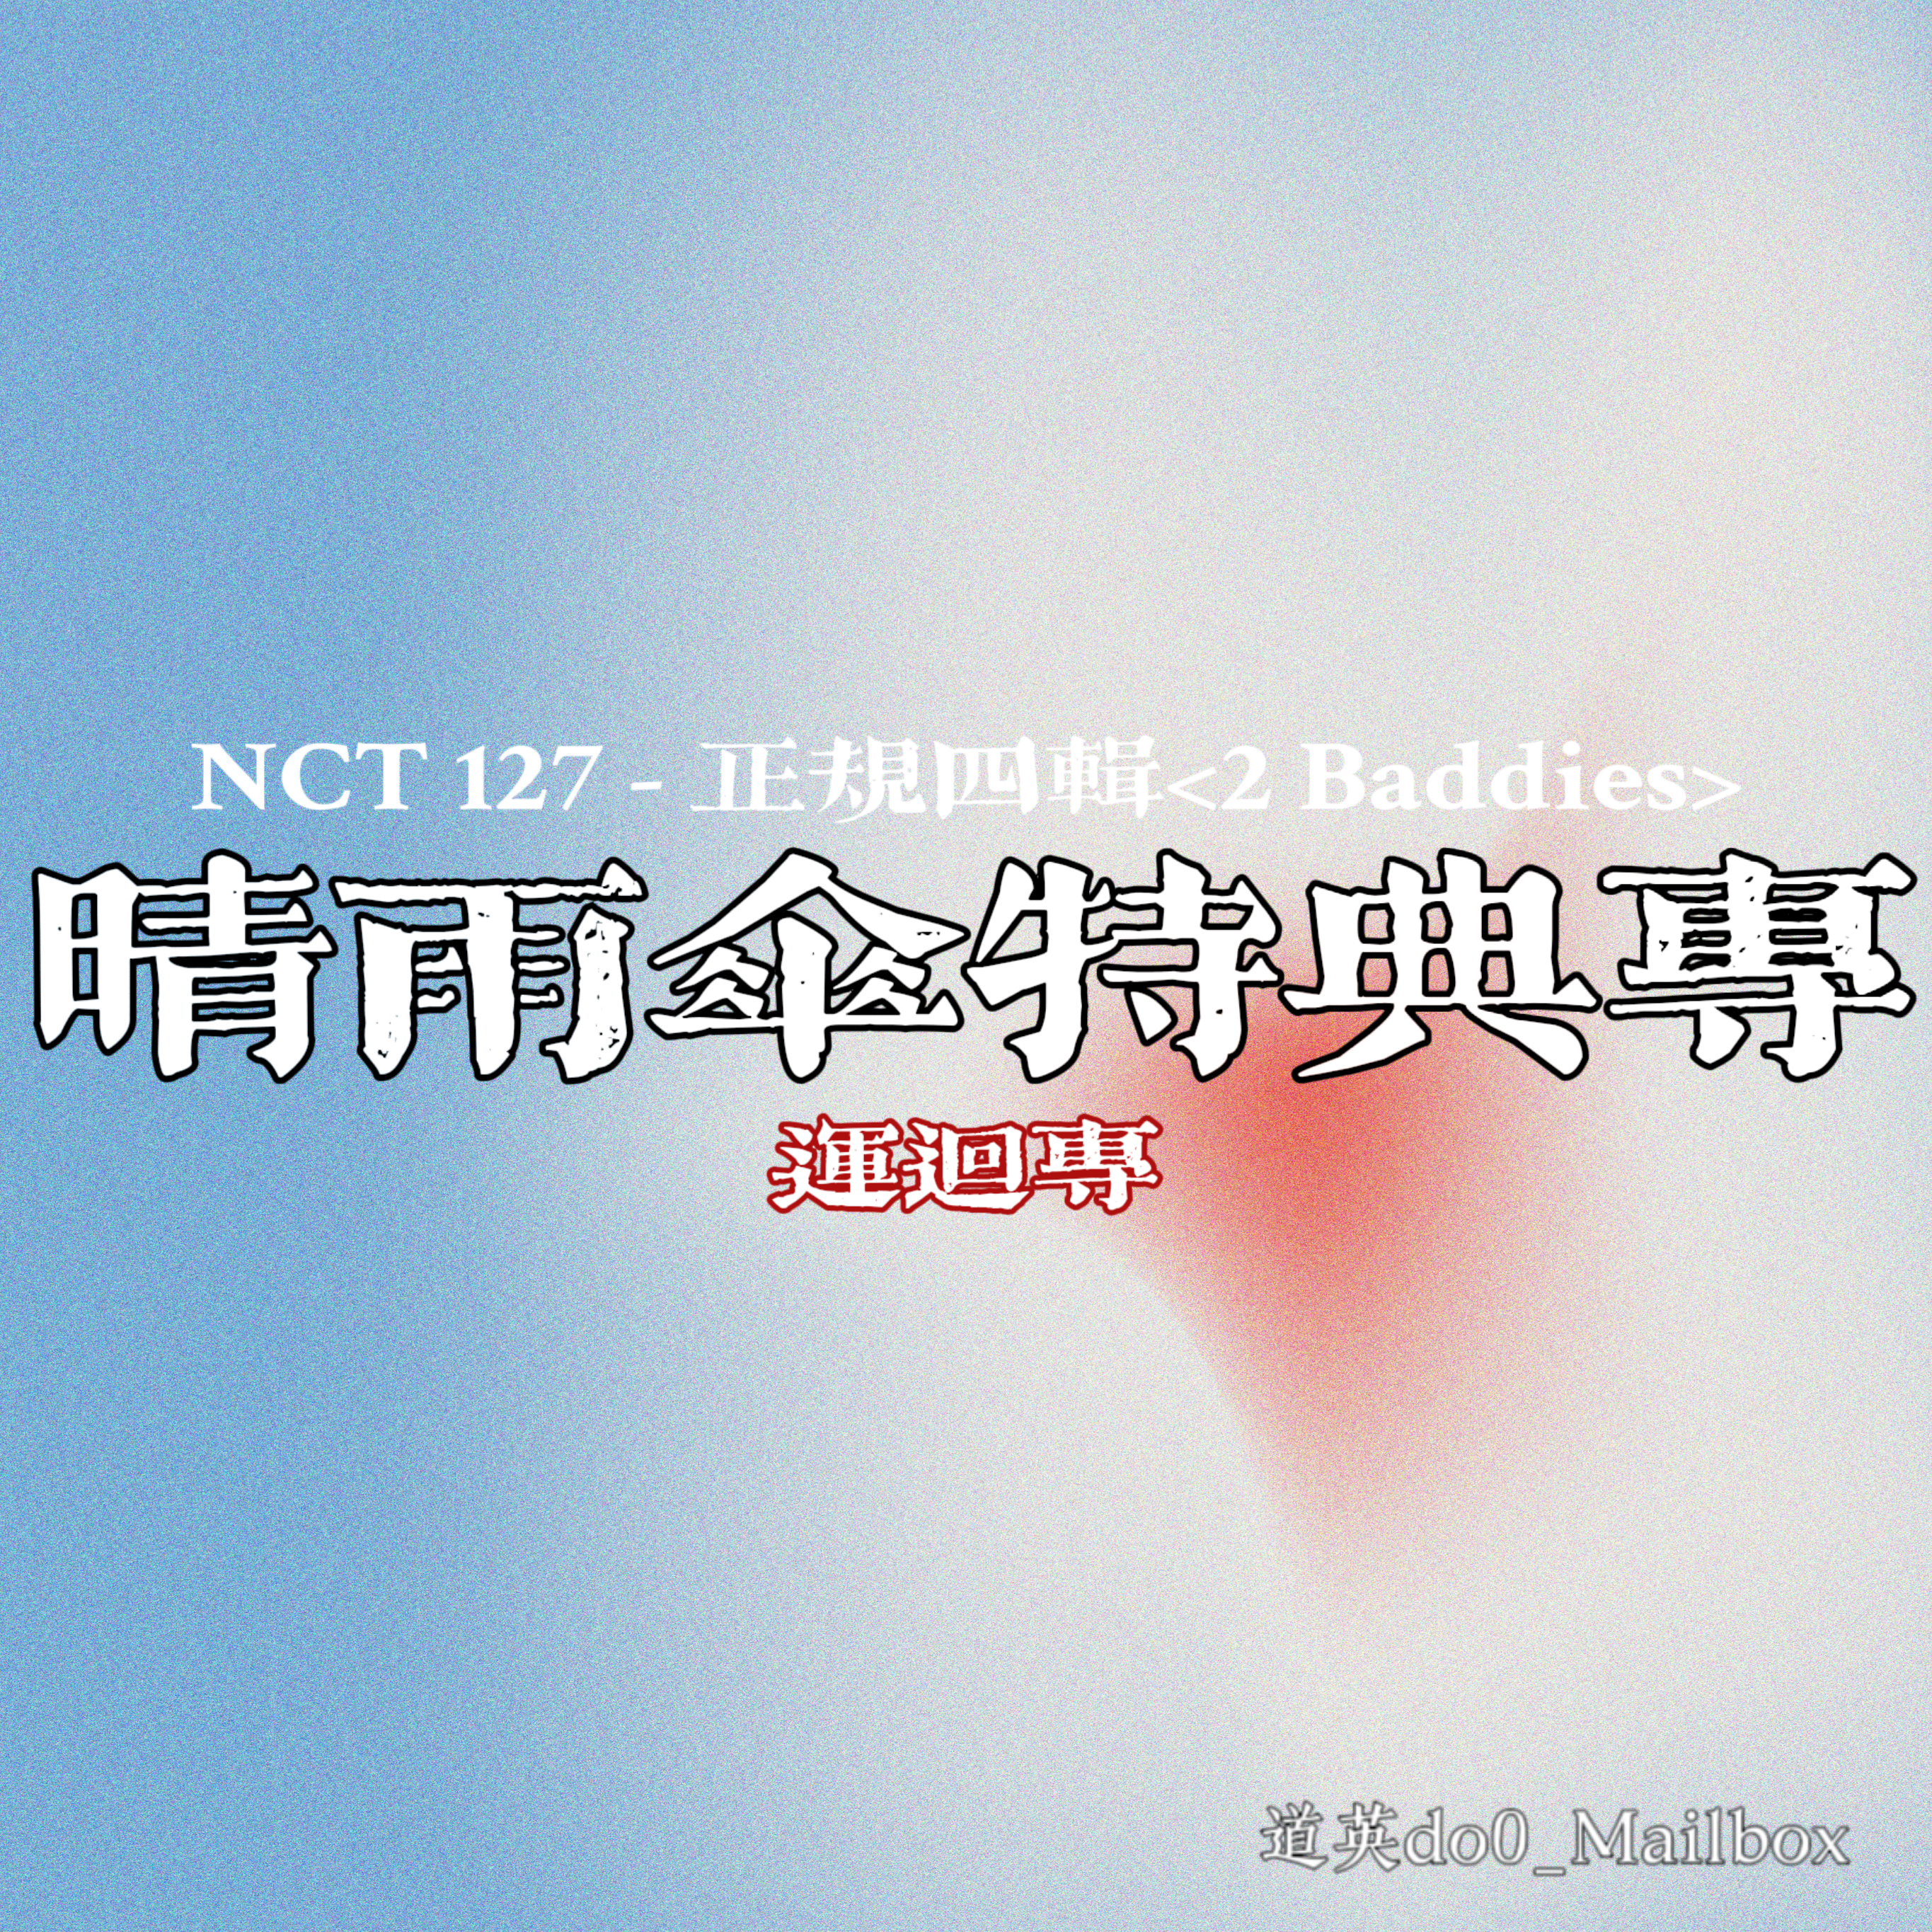 [全款 晴雨伞 特典专] NCT 127 - 正规专辑 4辑 [질주 (2 Baddies)] (Photobook Ver.) (随机版本)_道英吧_DoYoungBar